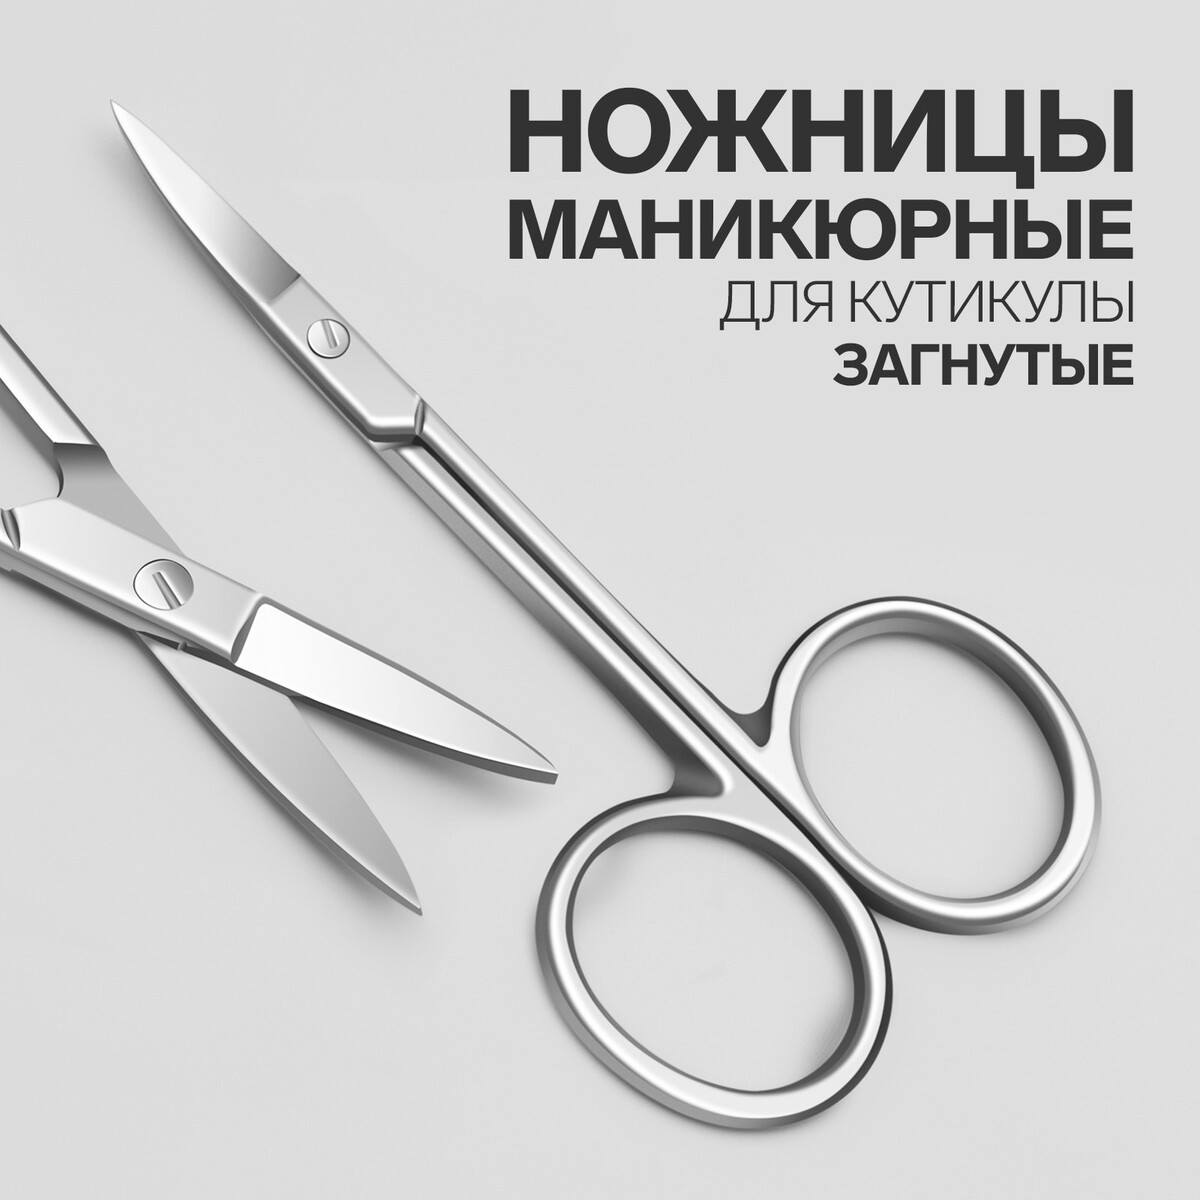 Ножницы маникюрные для кутикулы, загнутые, узкие, 9,3 см, цвет серебристый ножницы маникюрные загнутые 9 см на блистере серебристый